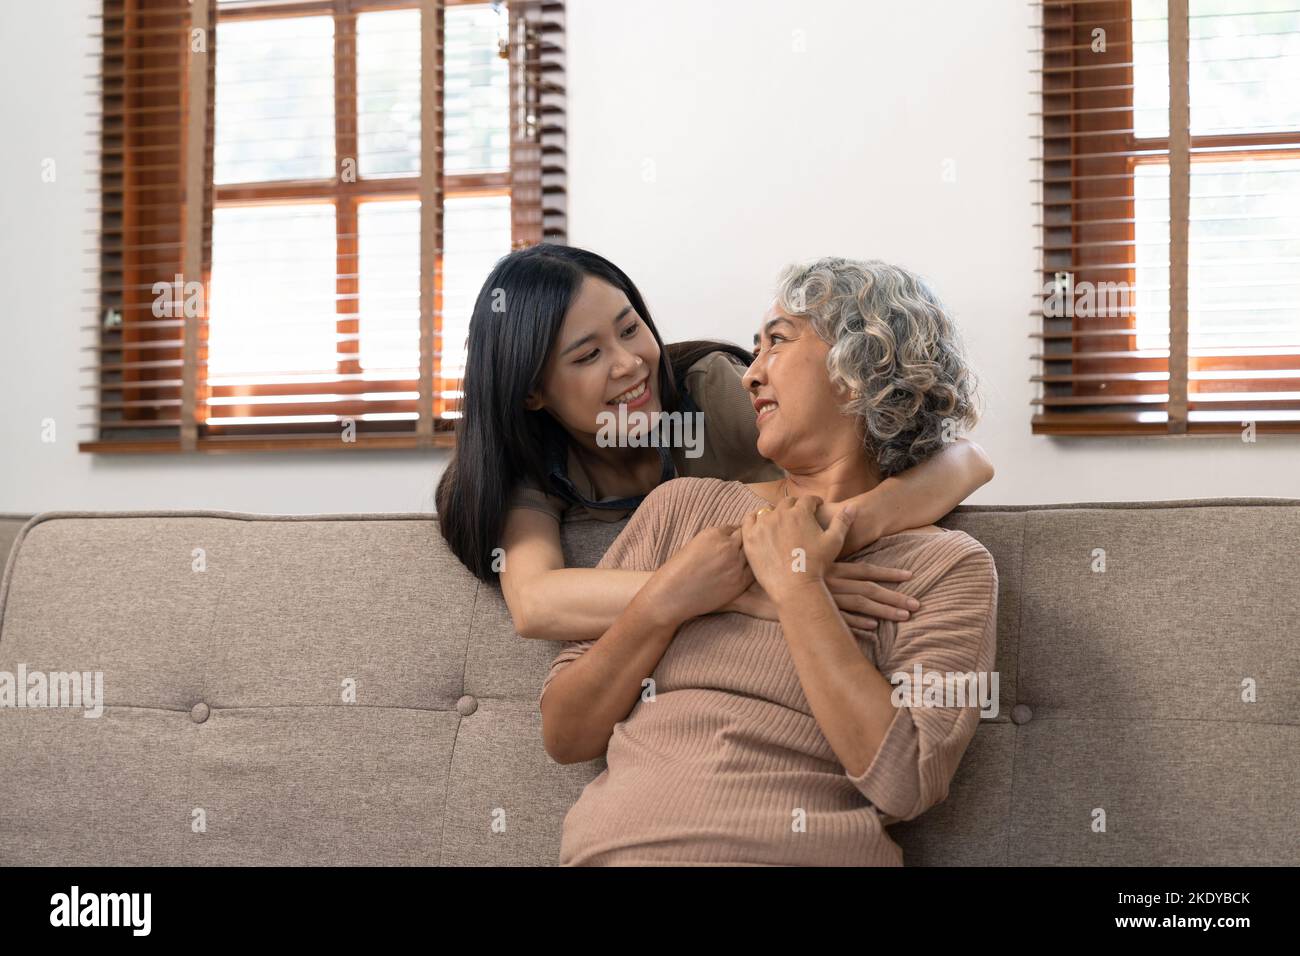 fille grognée souriante embrassant une mère âgée. concept de deux générations, belle jeune femme embrassant une femme mûre, posant pour la photo ensemble. Banque D'Images